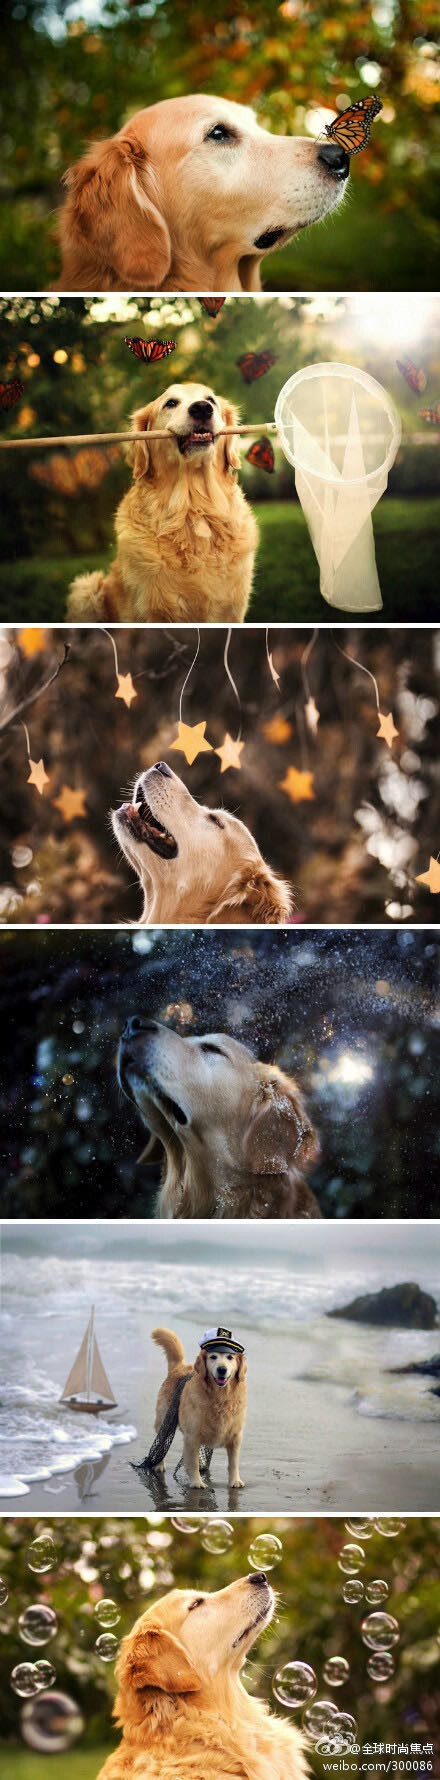 【狗狗的幸福生活】20岁摄影师Candice Sedighan拍摄了一组超有爱金毛寻回犬照片。图中的狗狗被肥皂泡泡、秋叶或蝴蝶围绕着，看起来非常开心，而且很会摆pose 拍照。那张蝴蝶停在狗狗鼻子上的唯美照片，并不是PS的结果。